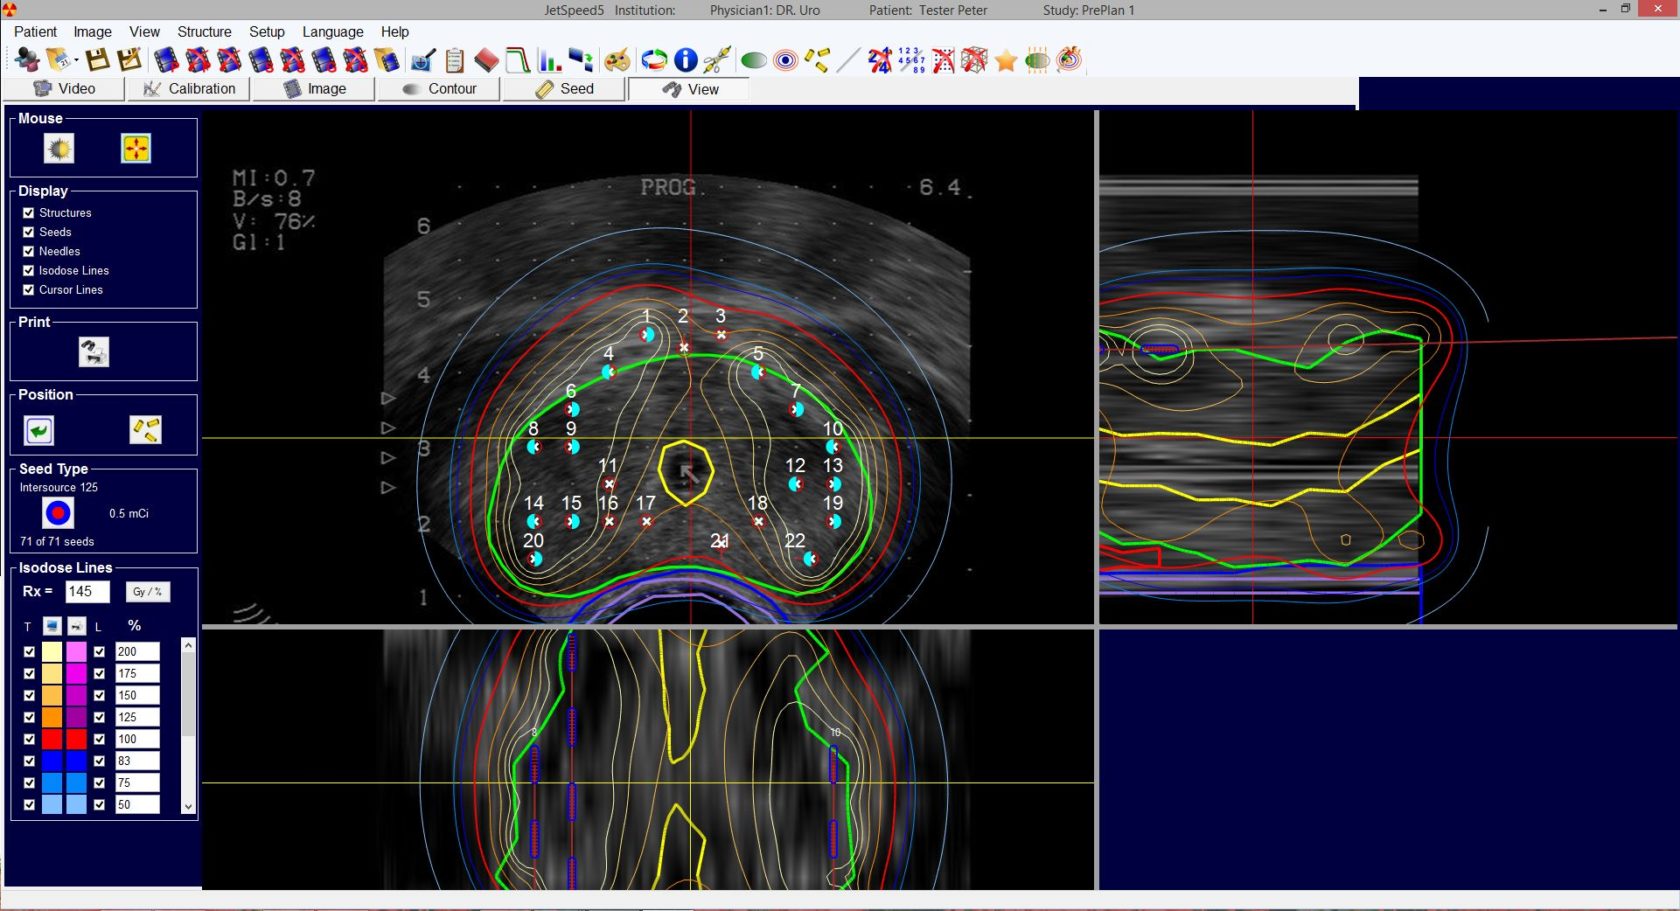 LDR Brachytherapy software JetSpeed5 für CT / MR / Ultraschall-Nachplanungsprozesse